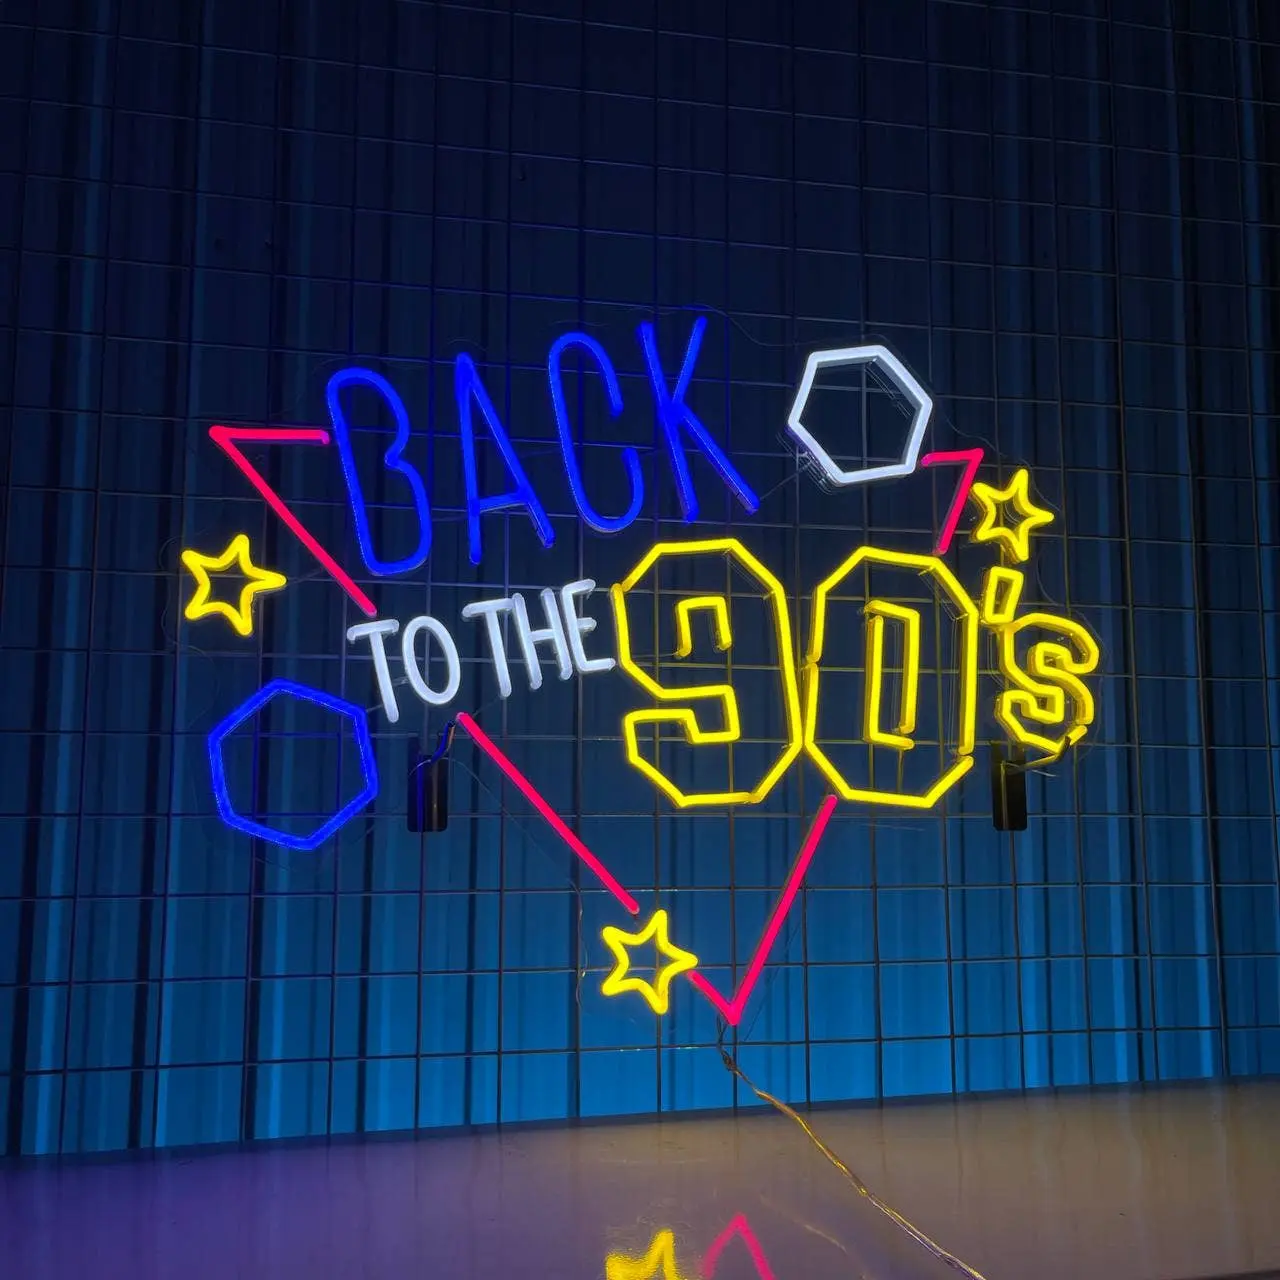 Geri 90s Neon burcu Vintage Retro parti mağaza dekorasyon